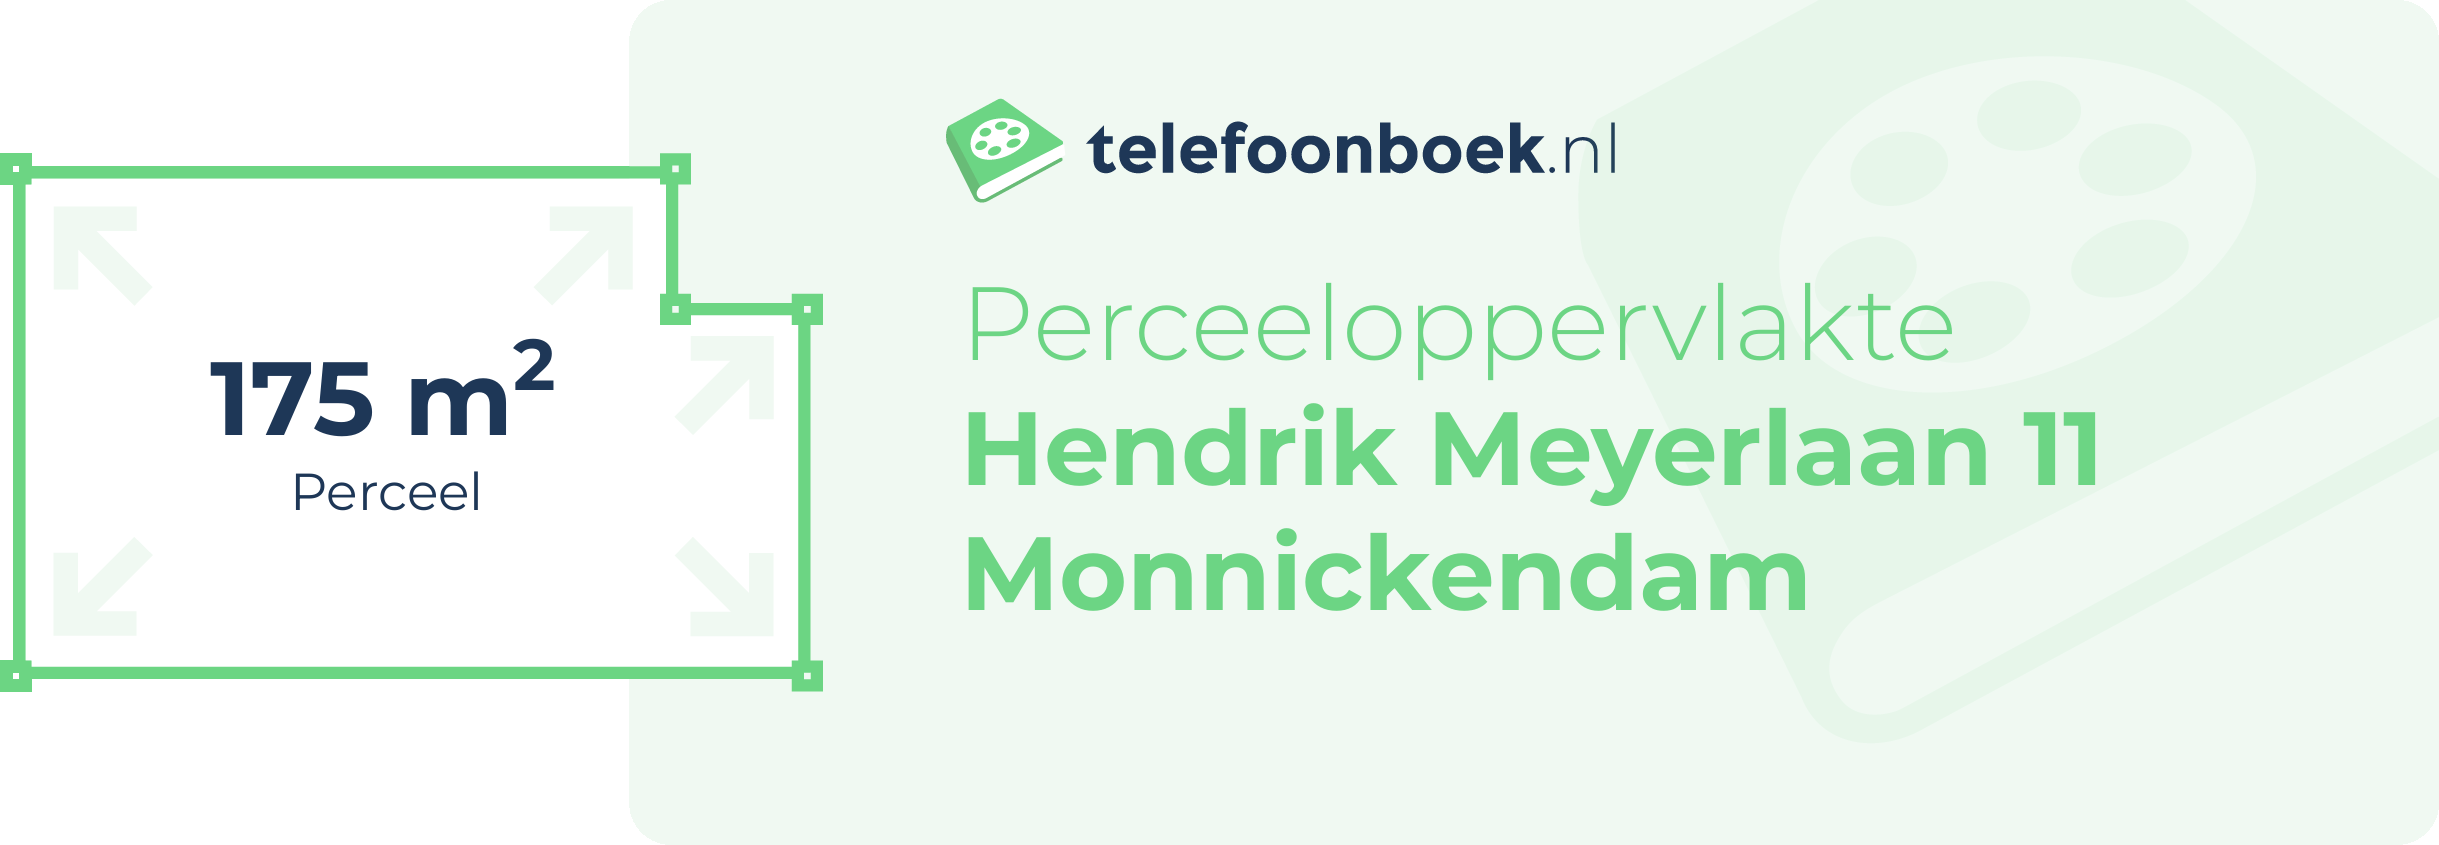 Perceeloppervlakte Hendrik Meyerlaan 11 Monnickendam